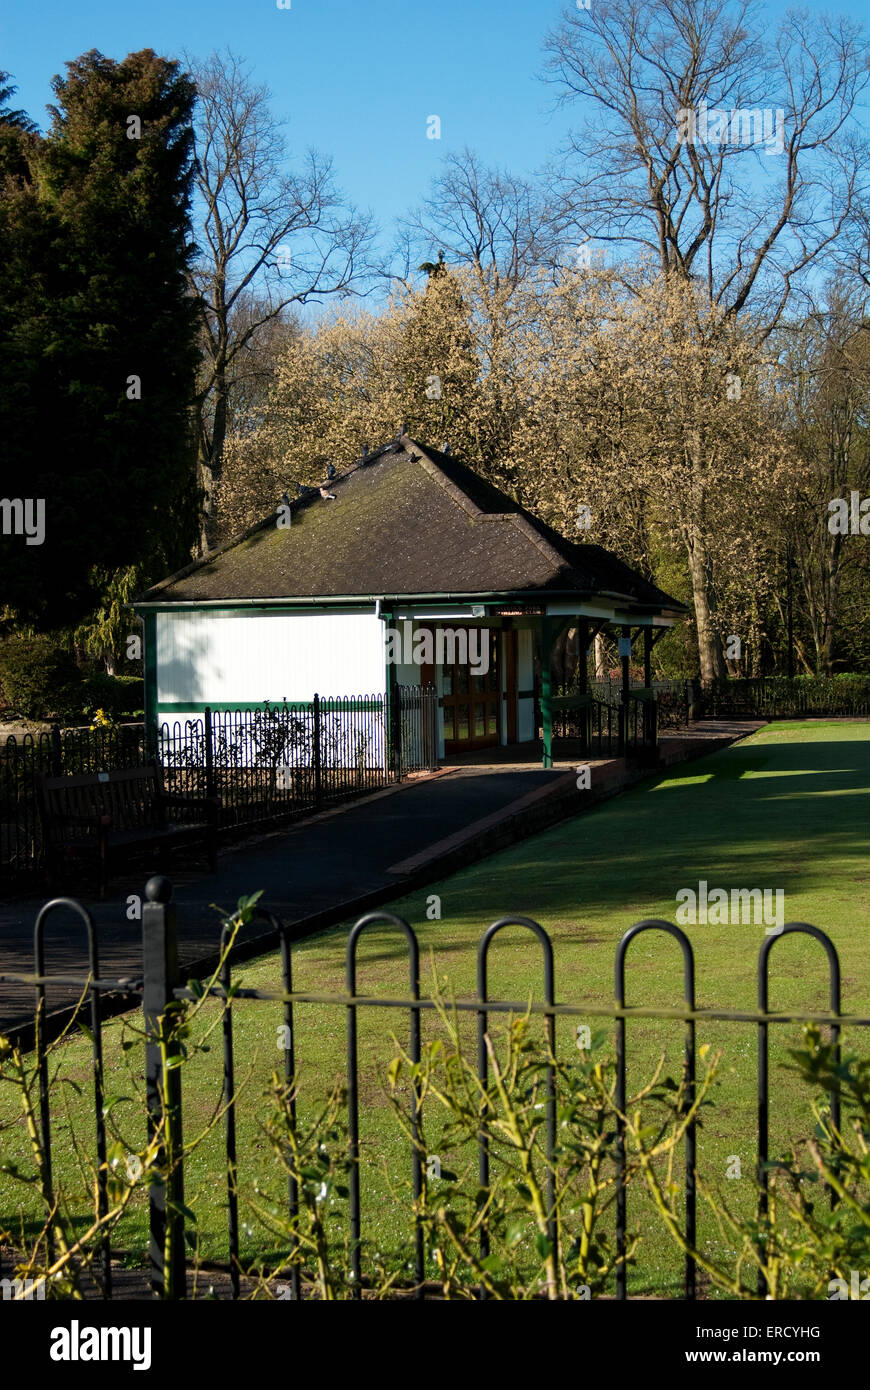 Image documentaire de Matlock, Derbyshire en montrant Matlock Park Bowling Club house et vert dans Hall Leys Park Banque D'Images